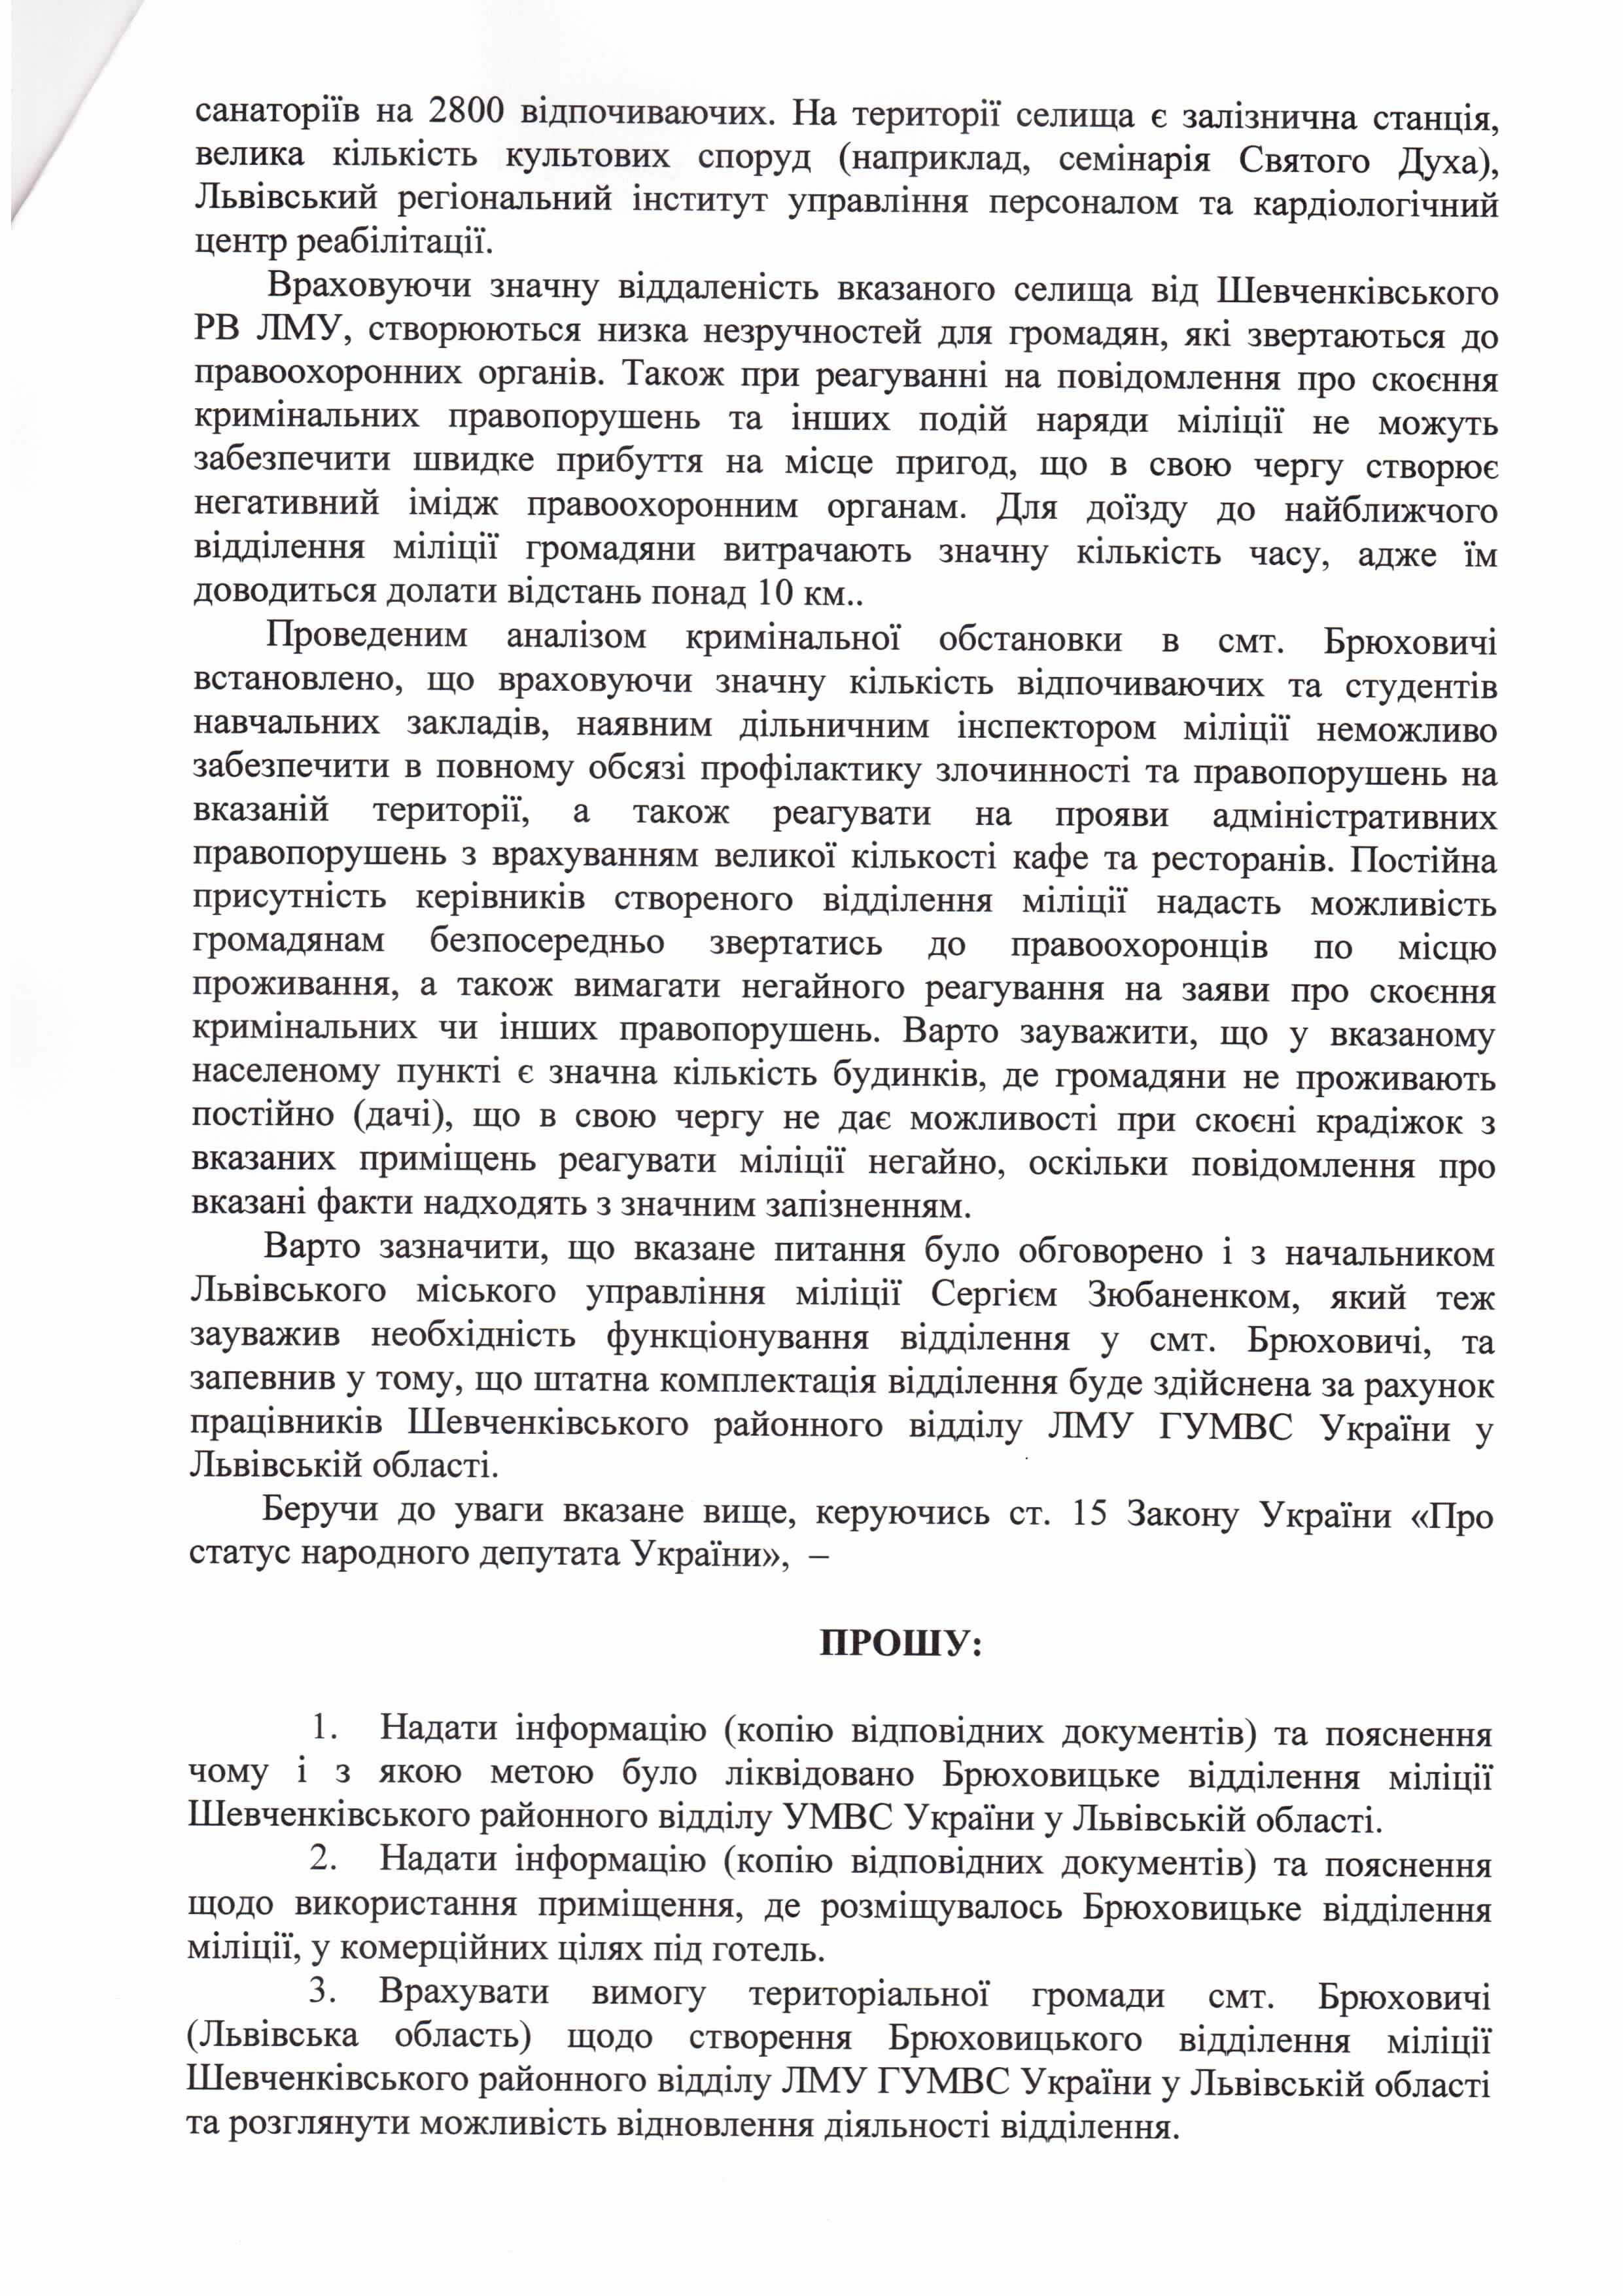 Запит народного депутата України Дмитра Добродомова №01-07/313 від 24 січня 2015 року